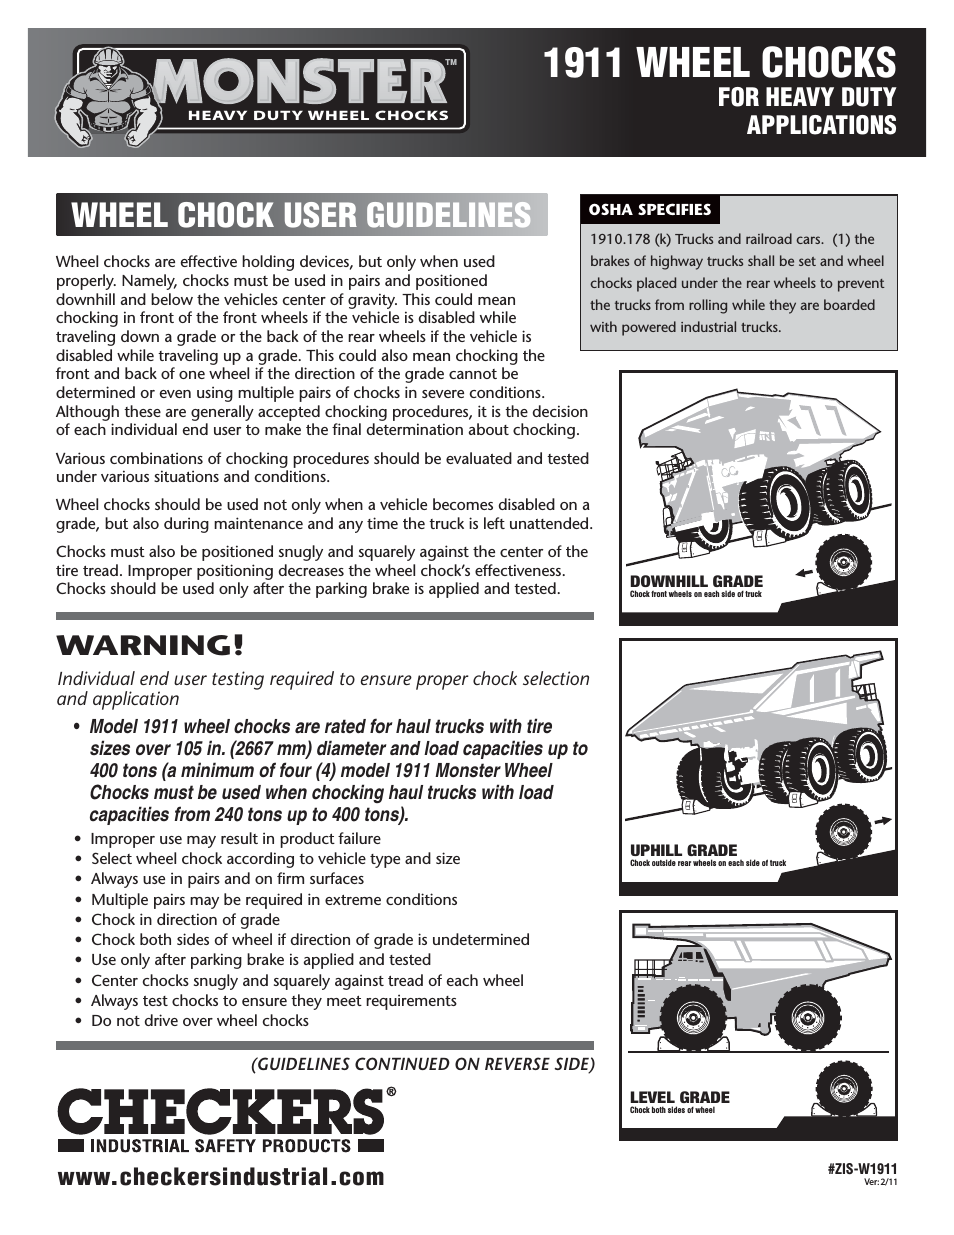 Monster 1911 Wheel Chocks User Guidelines